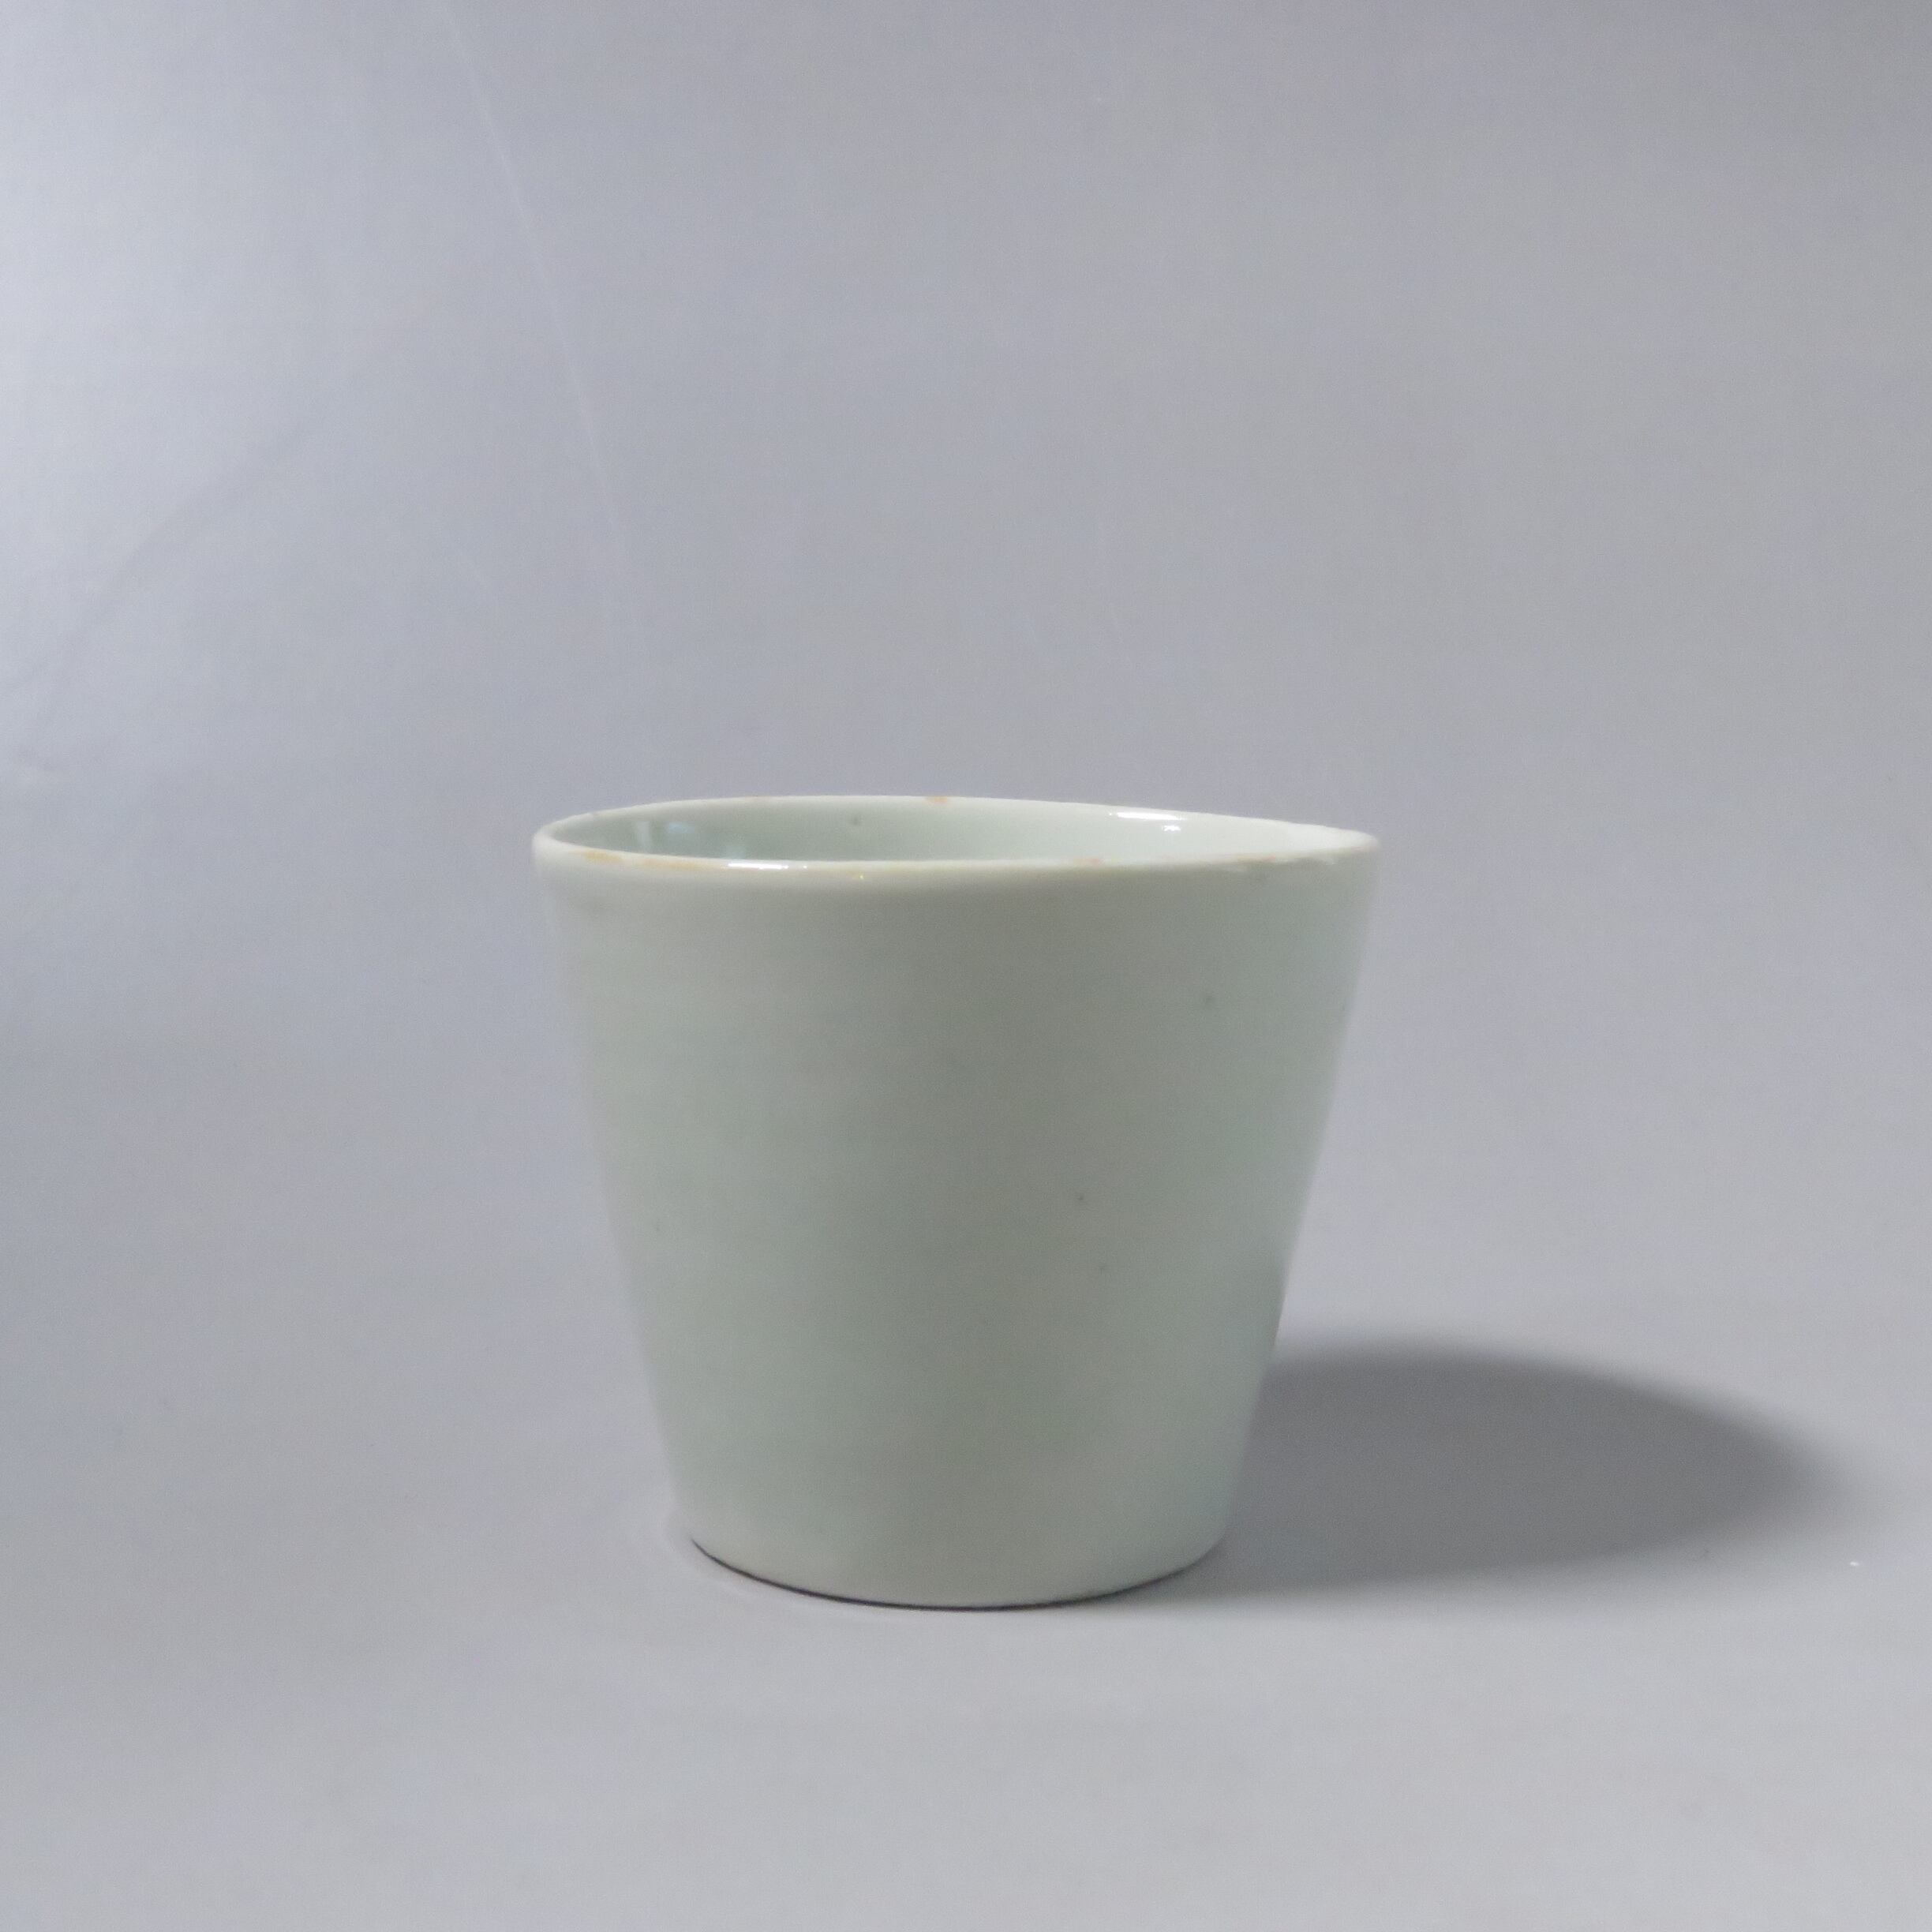 古伊万里 白磁 そば猪口 (a) 江戸宝暦時代(1750年)頃 茶杯 ぐい呑にも